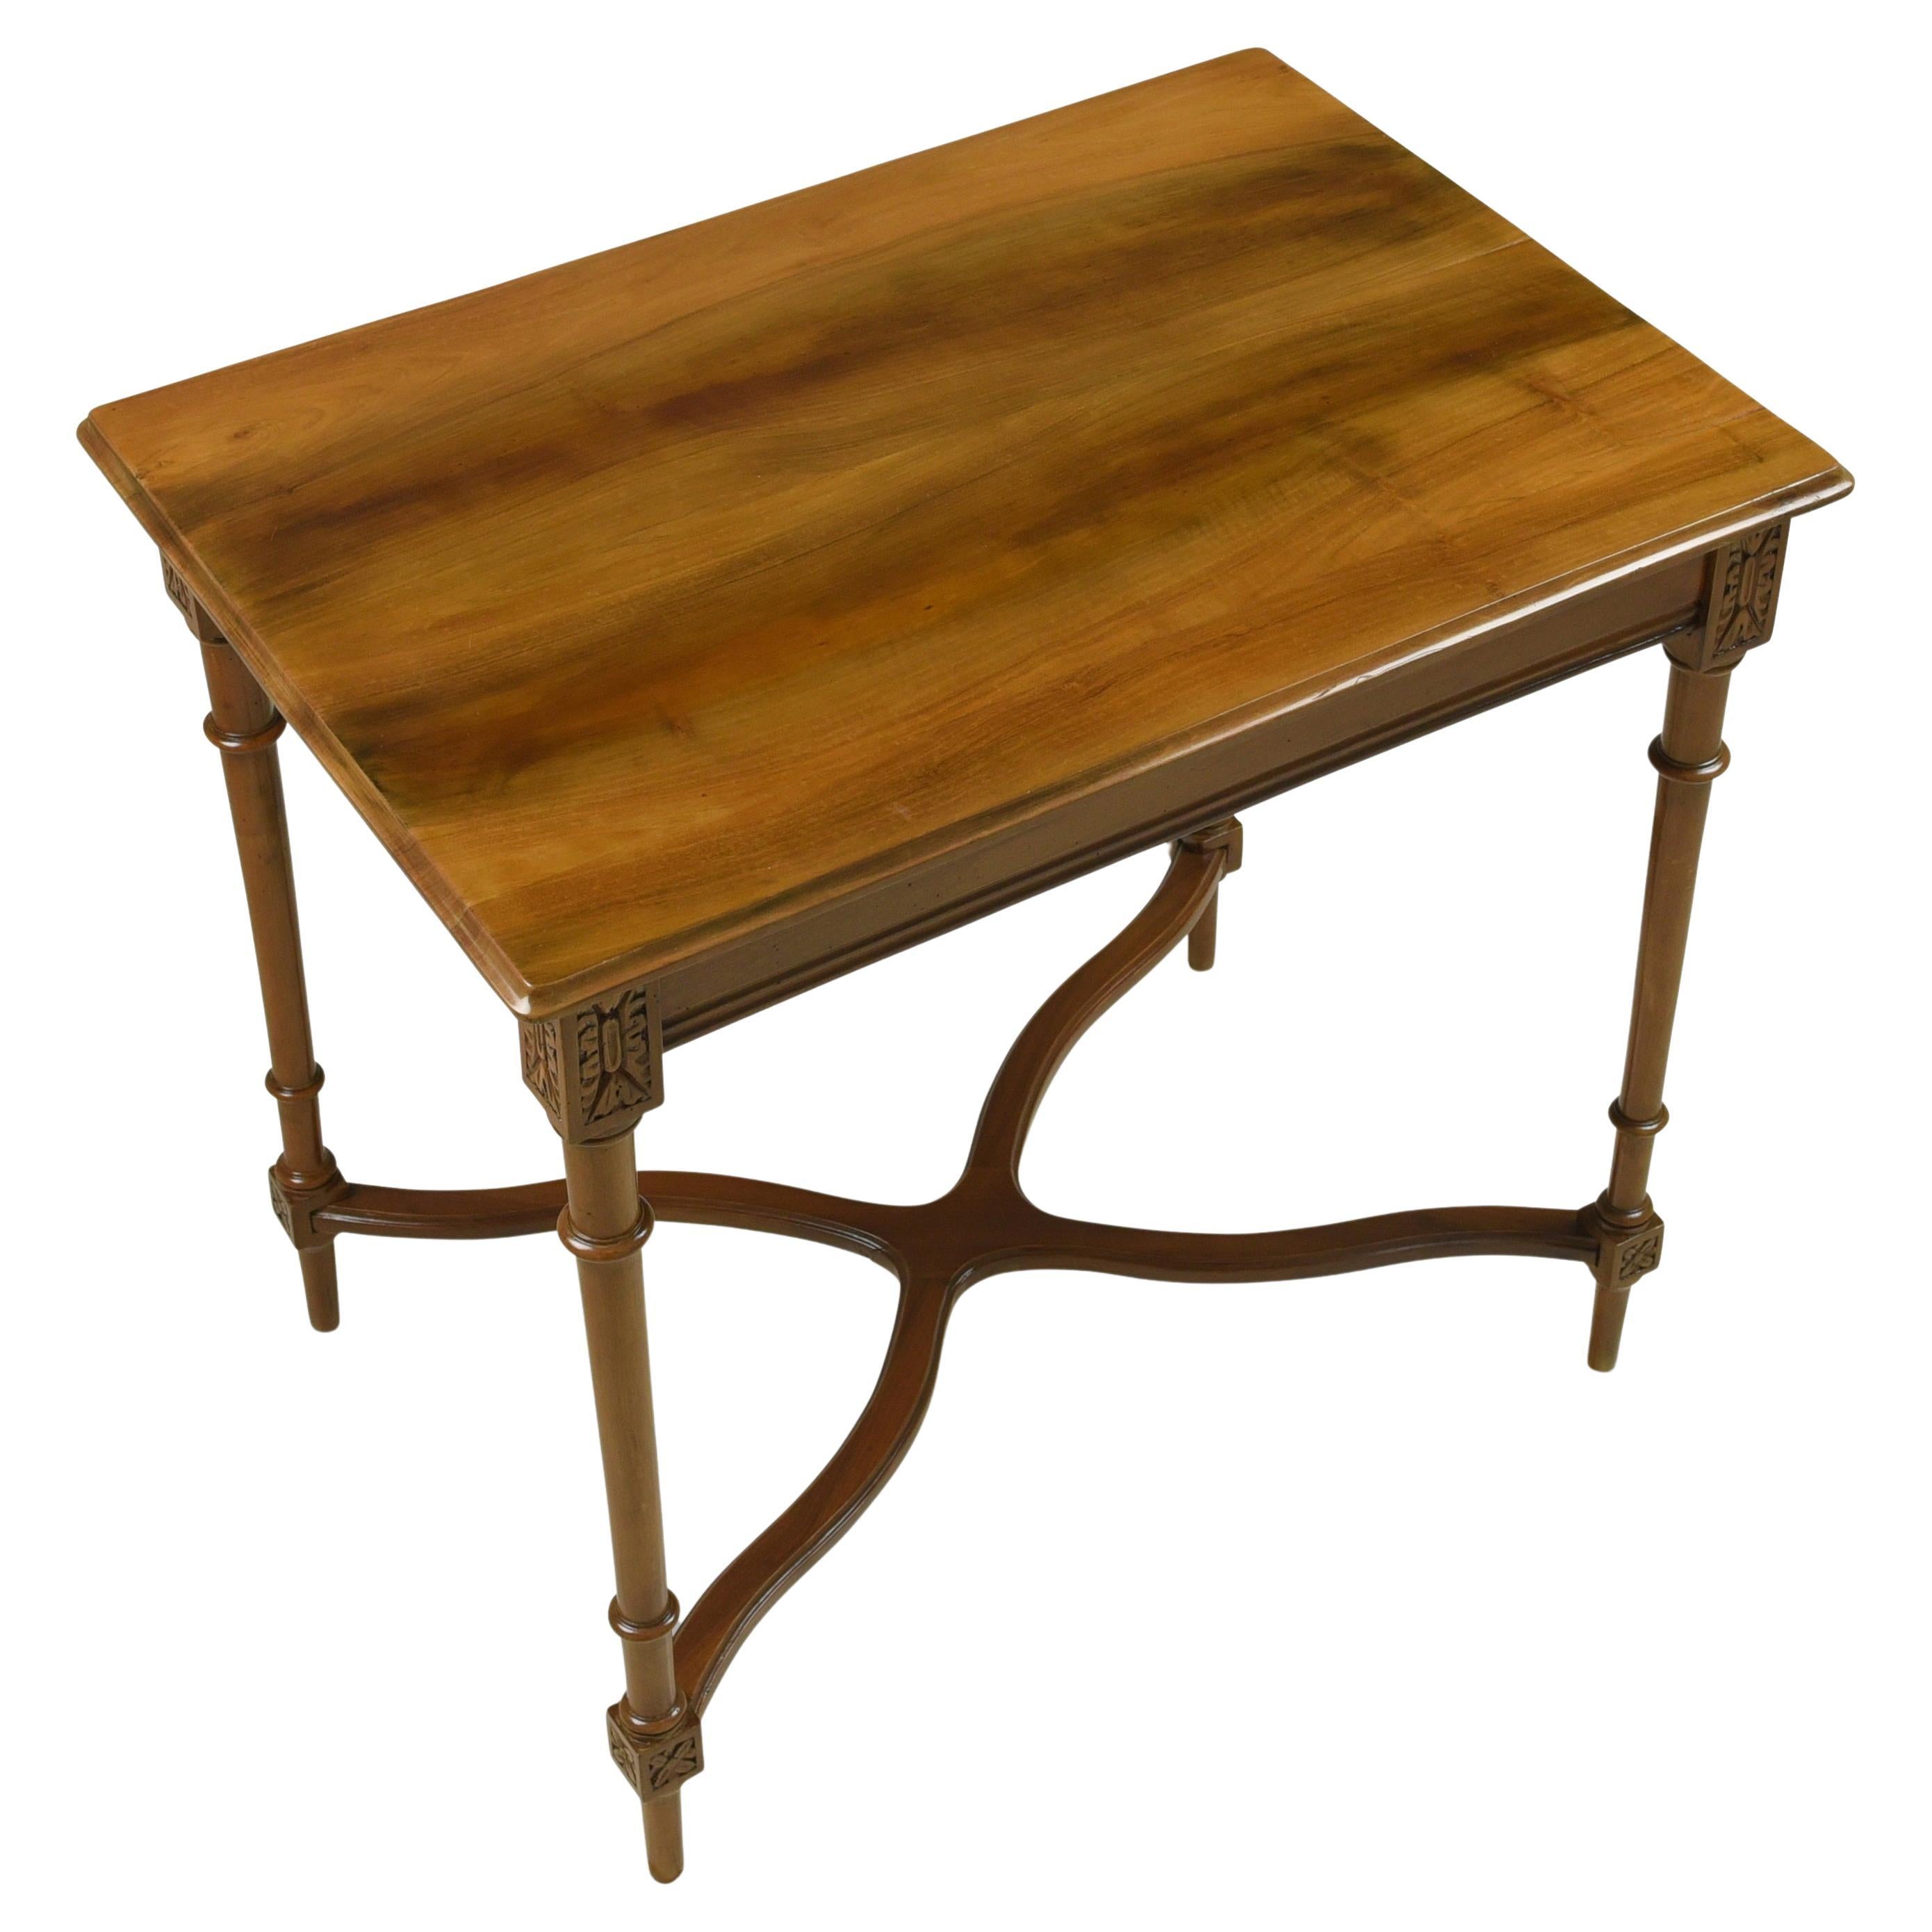 Wilhelminian Period Salon Table / Side Table in Solid Walnut